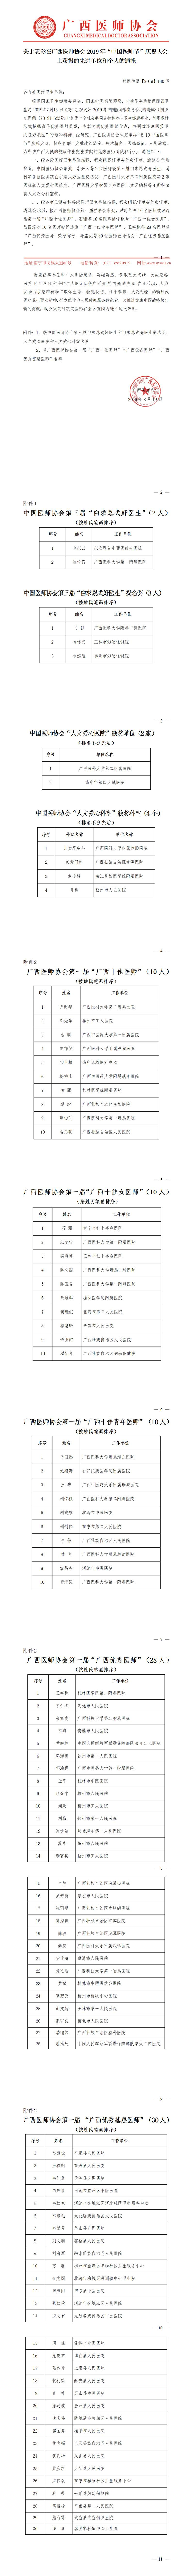 7 【2019】140号  关于表彰在600cc全讯白菜2019年“中国医师节”庆祝大会上获得的先进单位和个人的通报.jpg